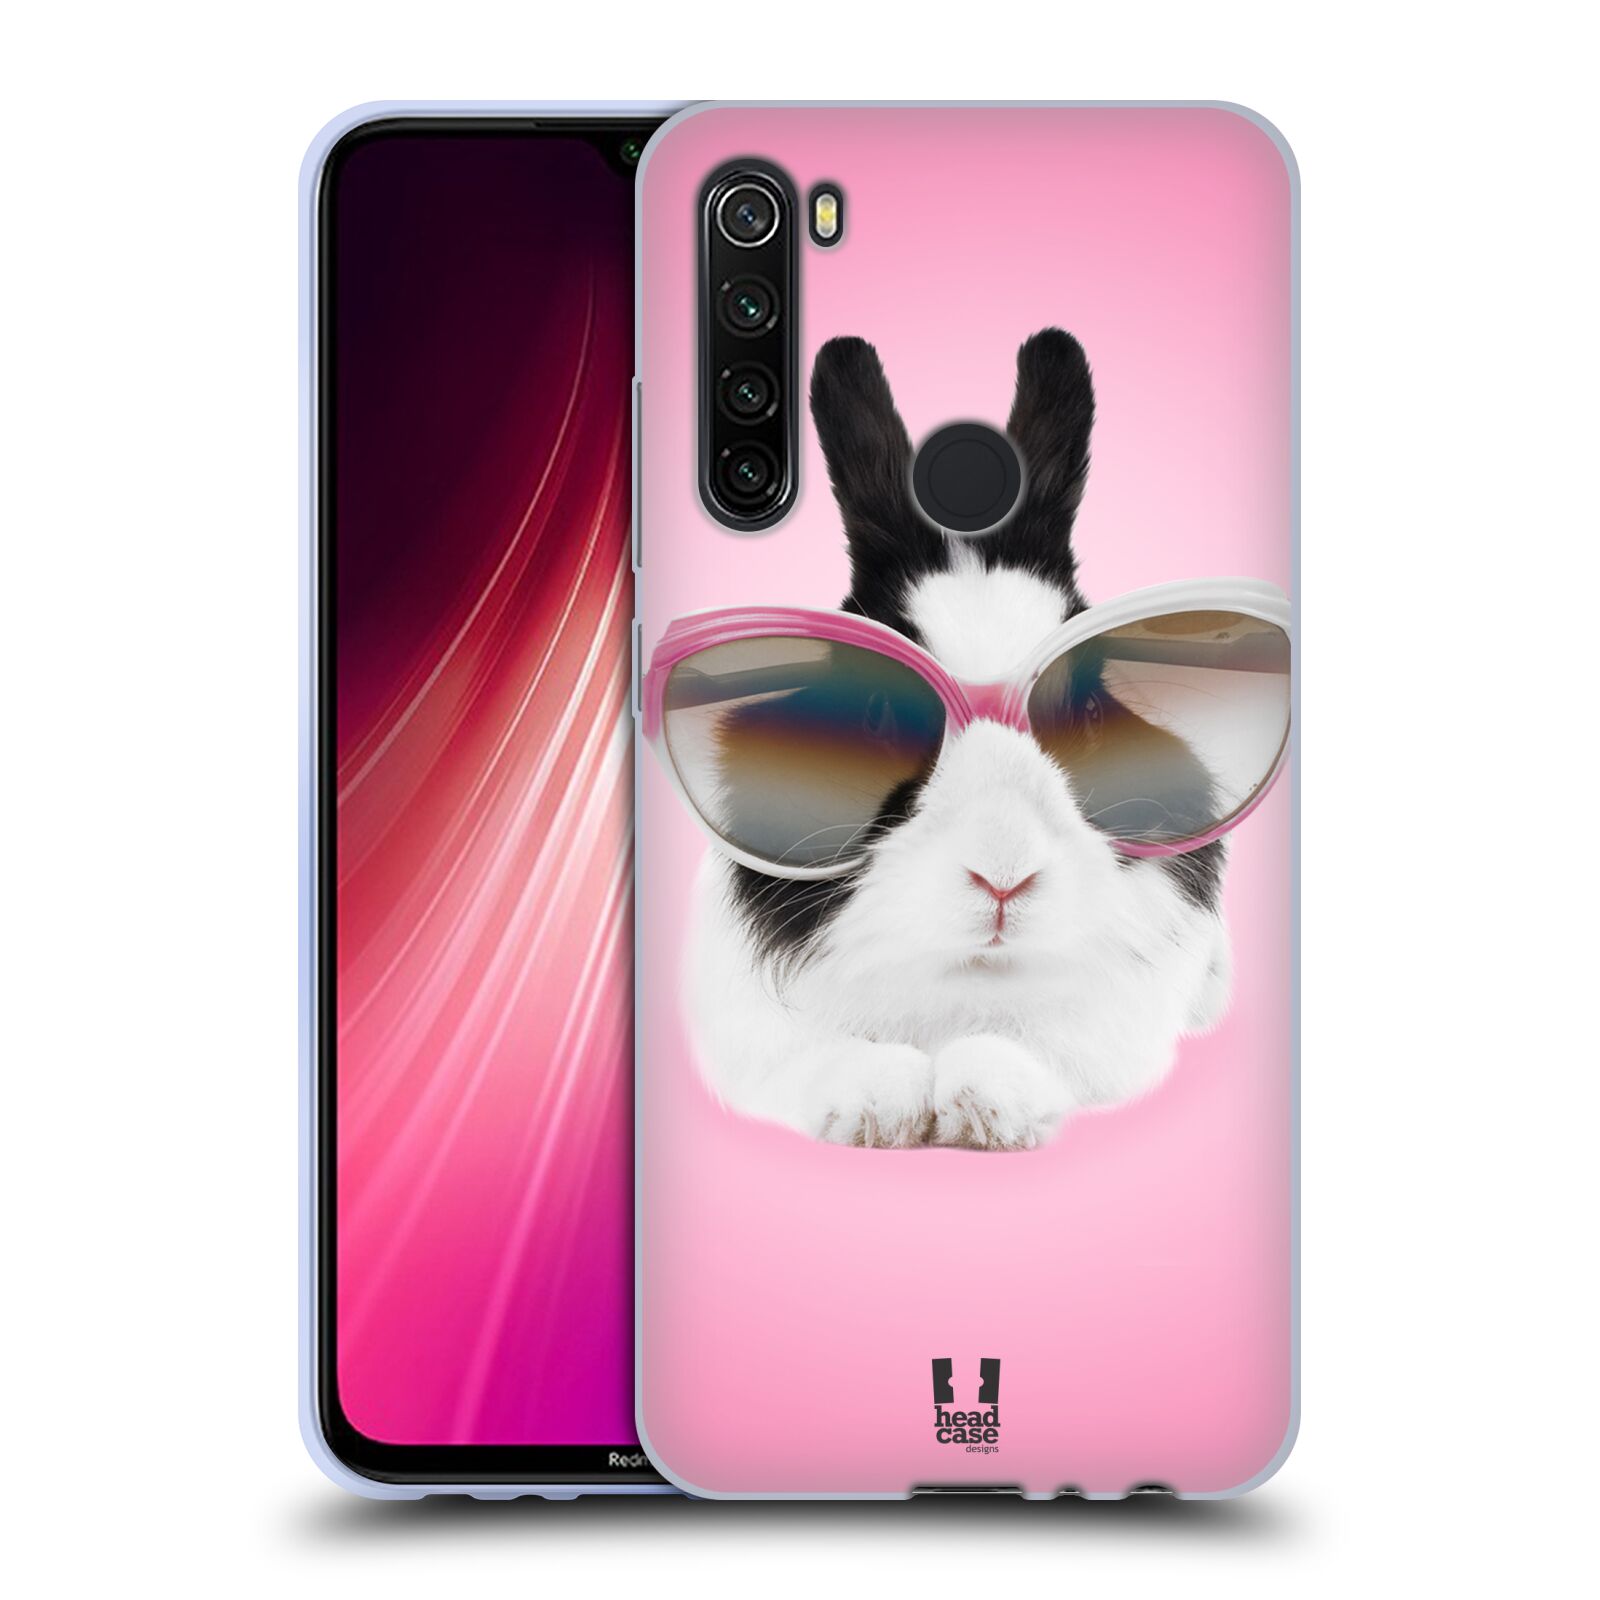 Plastový obal HEAD CASE na mobil Xiaomi Redmi Note 8T vzor Legrační zvířátka roztomilý králíček s brýlemi růžová